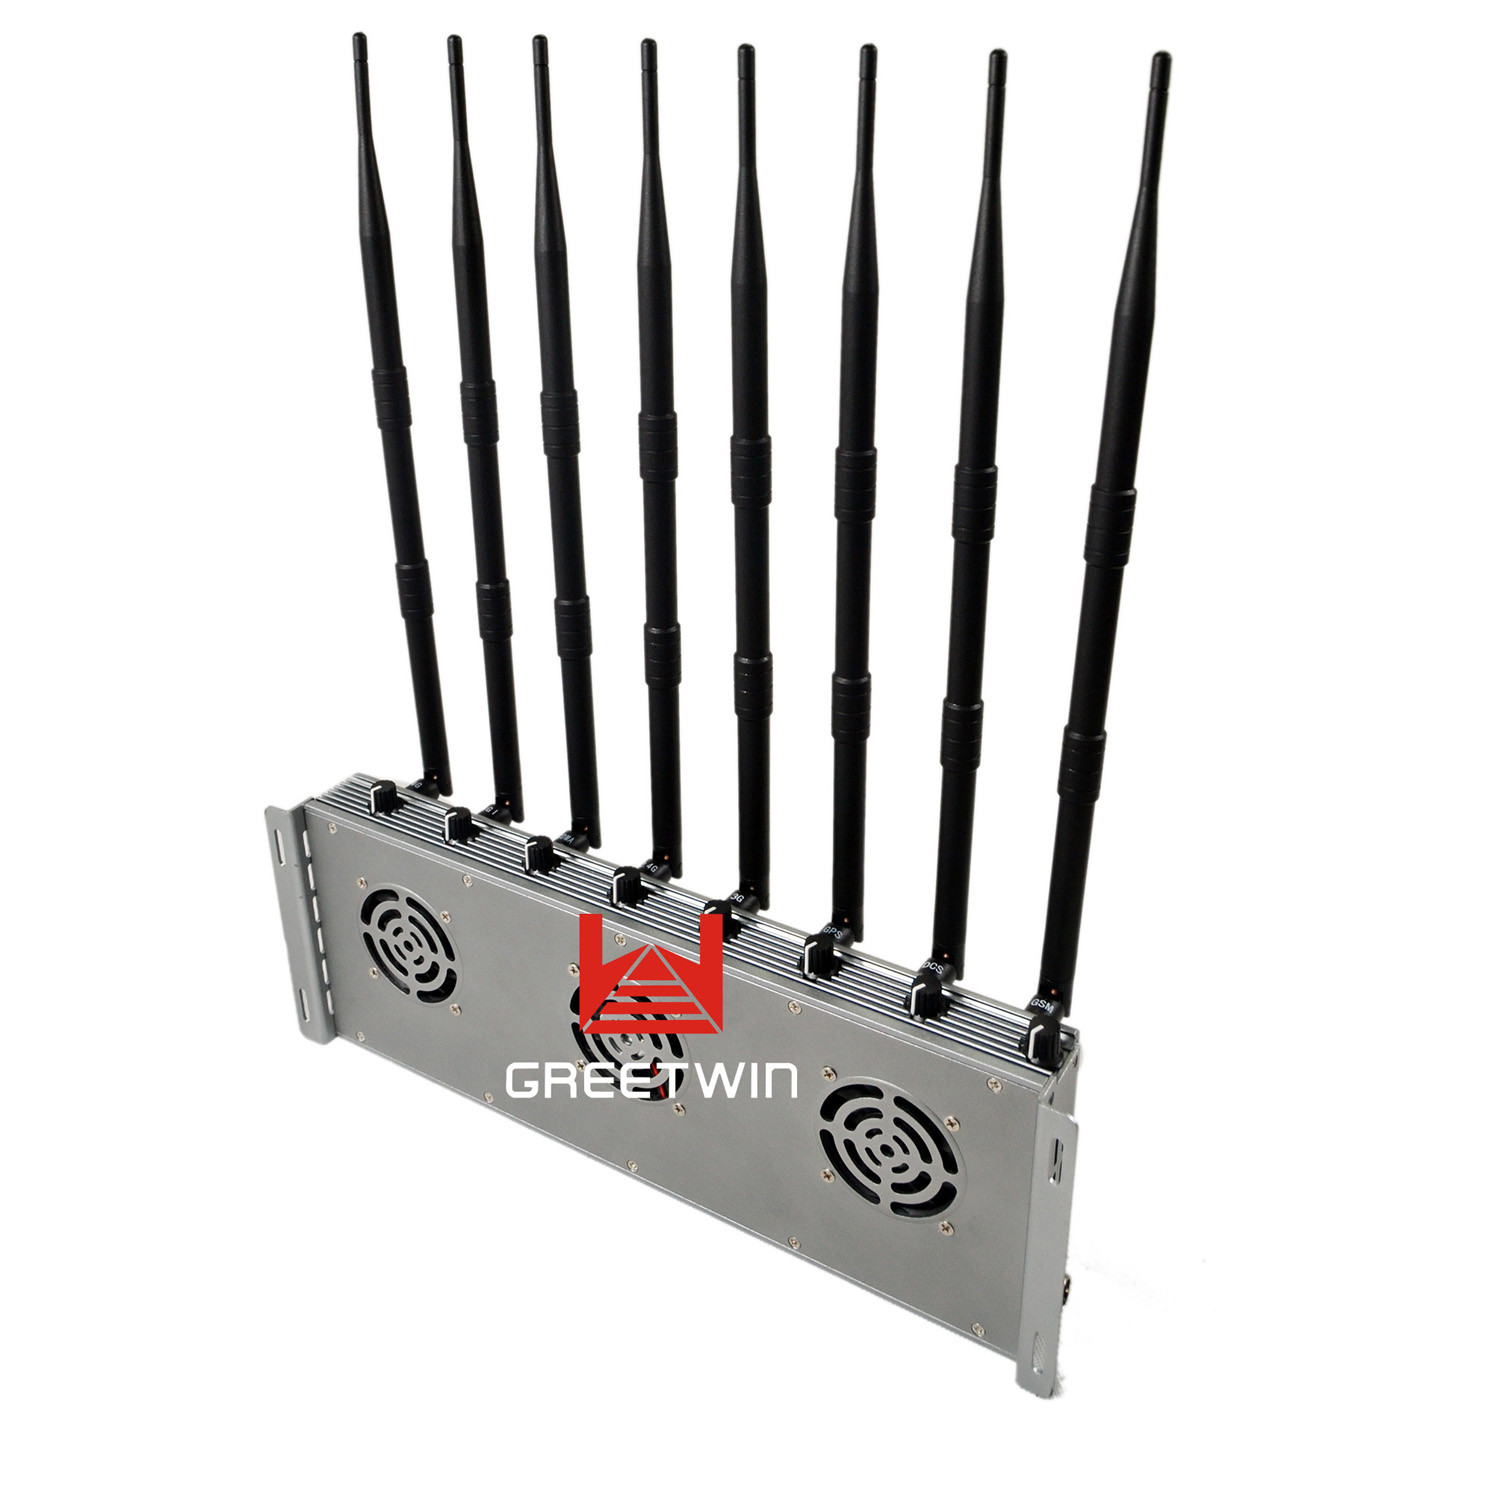 Poderoso bloqueador de sinal de celular WIFI 8 antenas interior ajustável 46W potência de saída